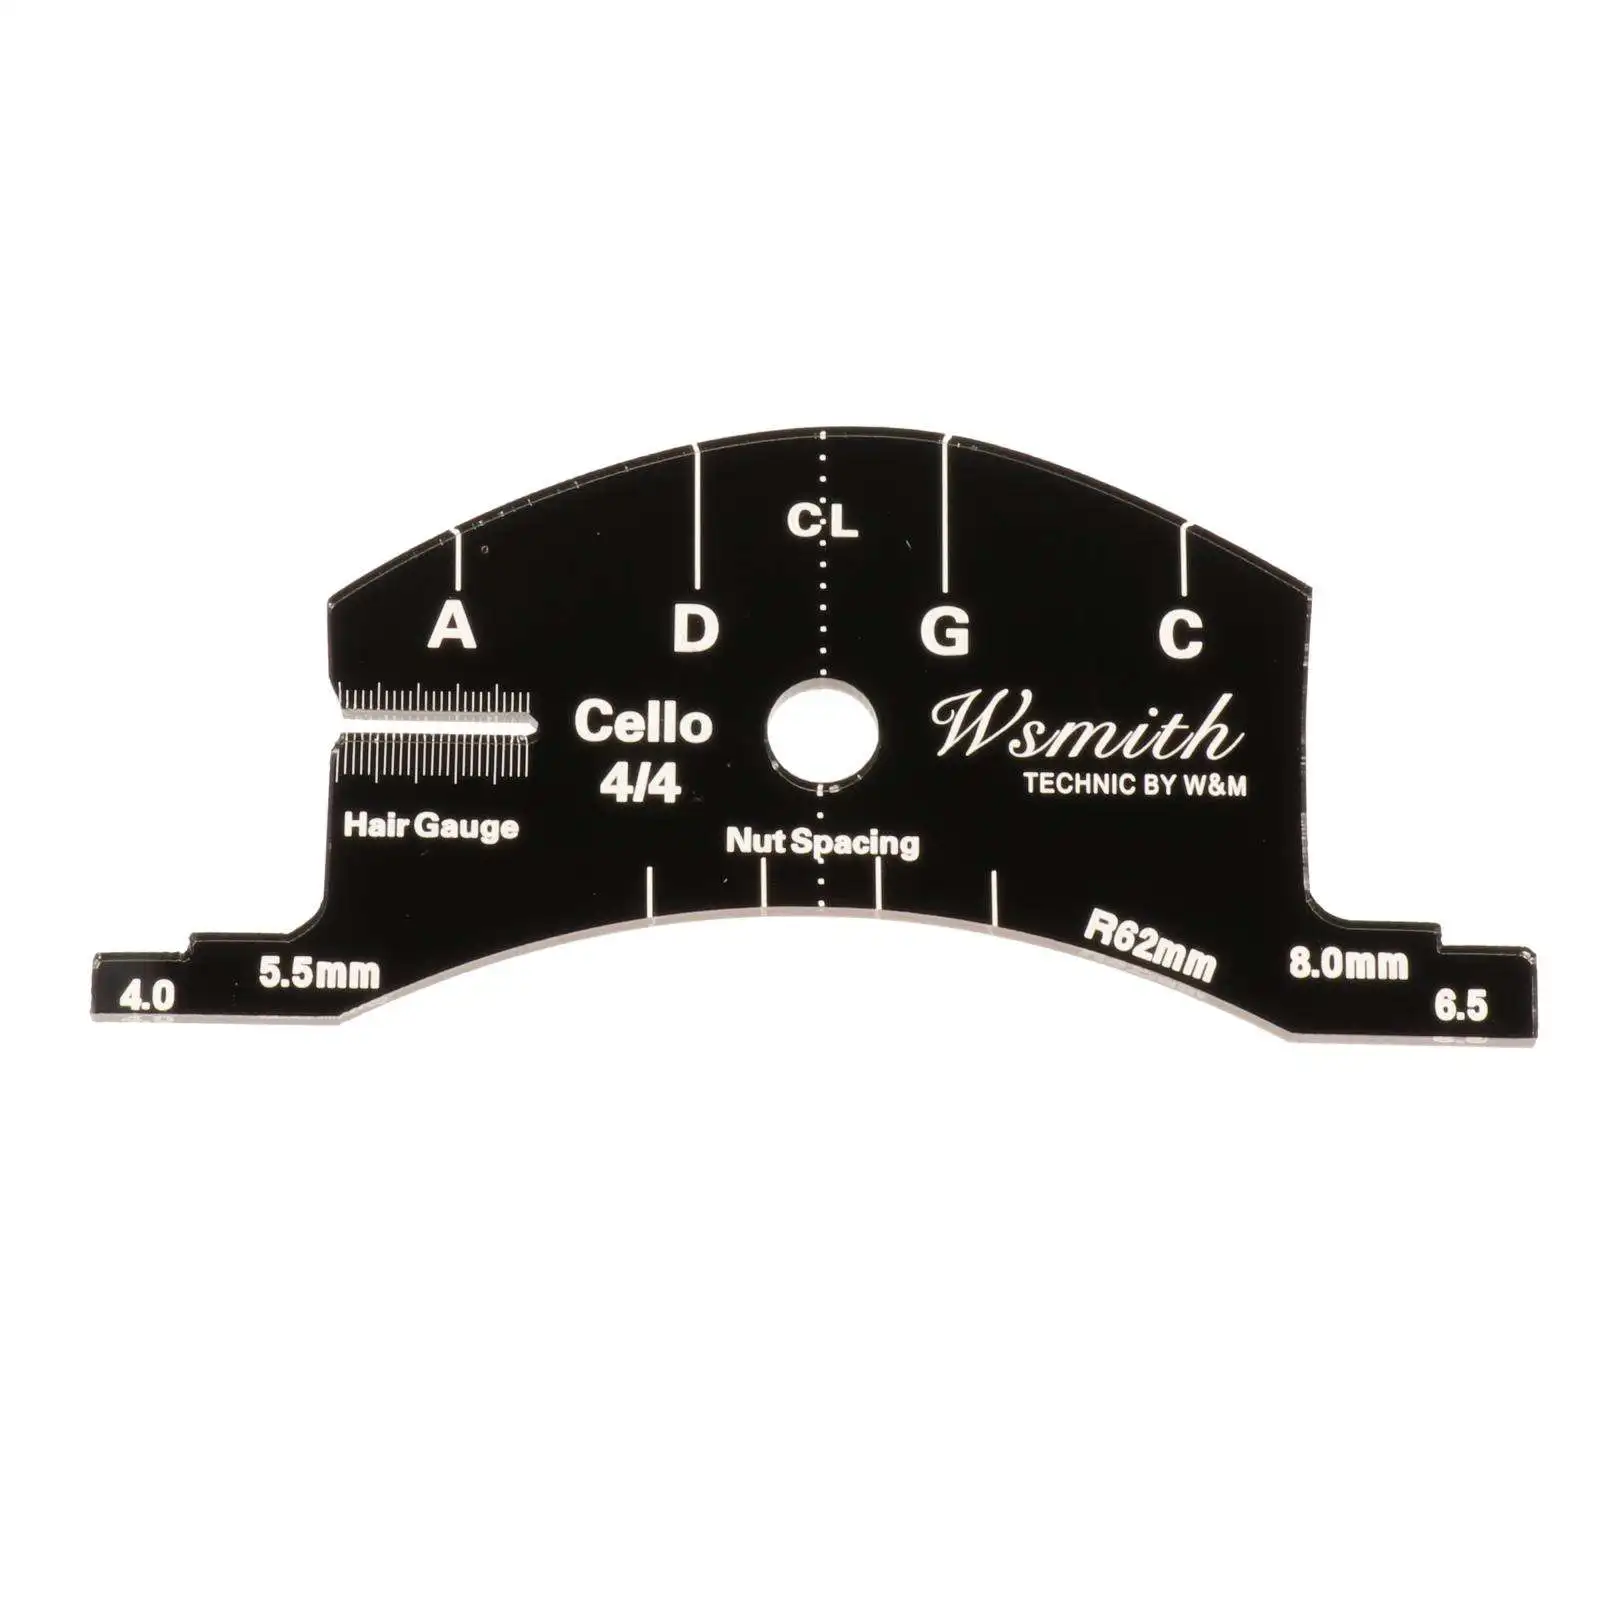 1/2 3/4 4/4 Violin Cello Bridge Fingerboard Template for Instruments Accessories